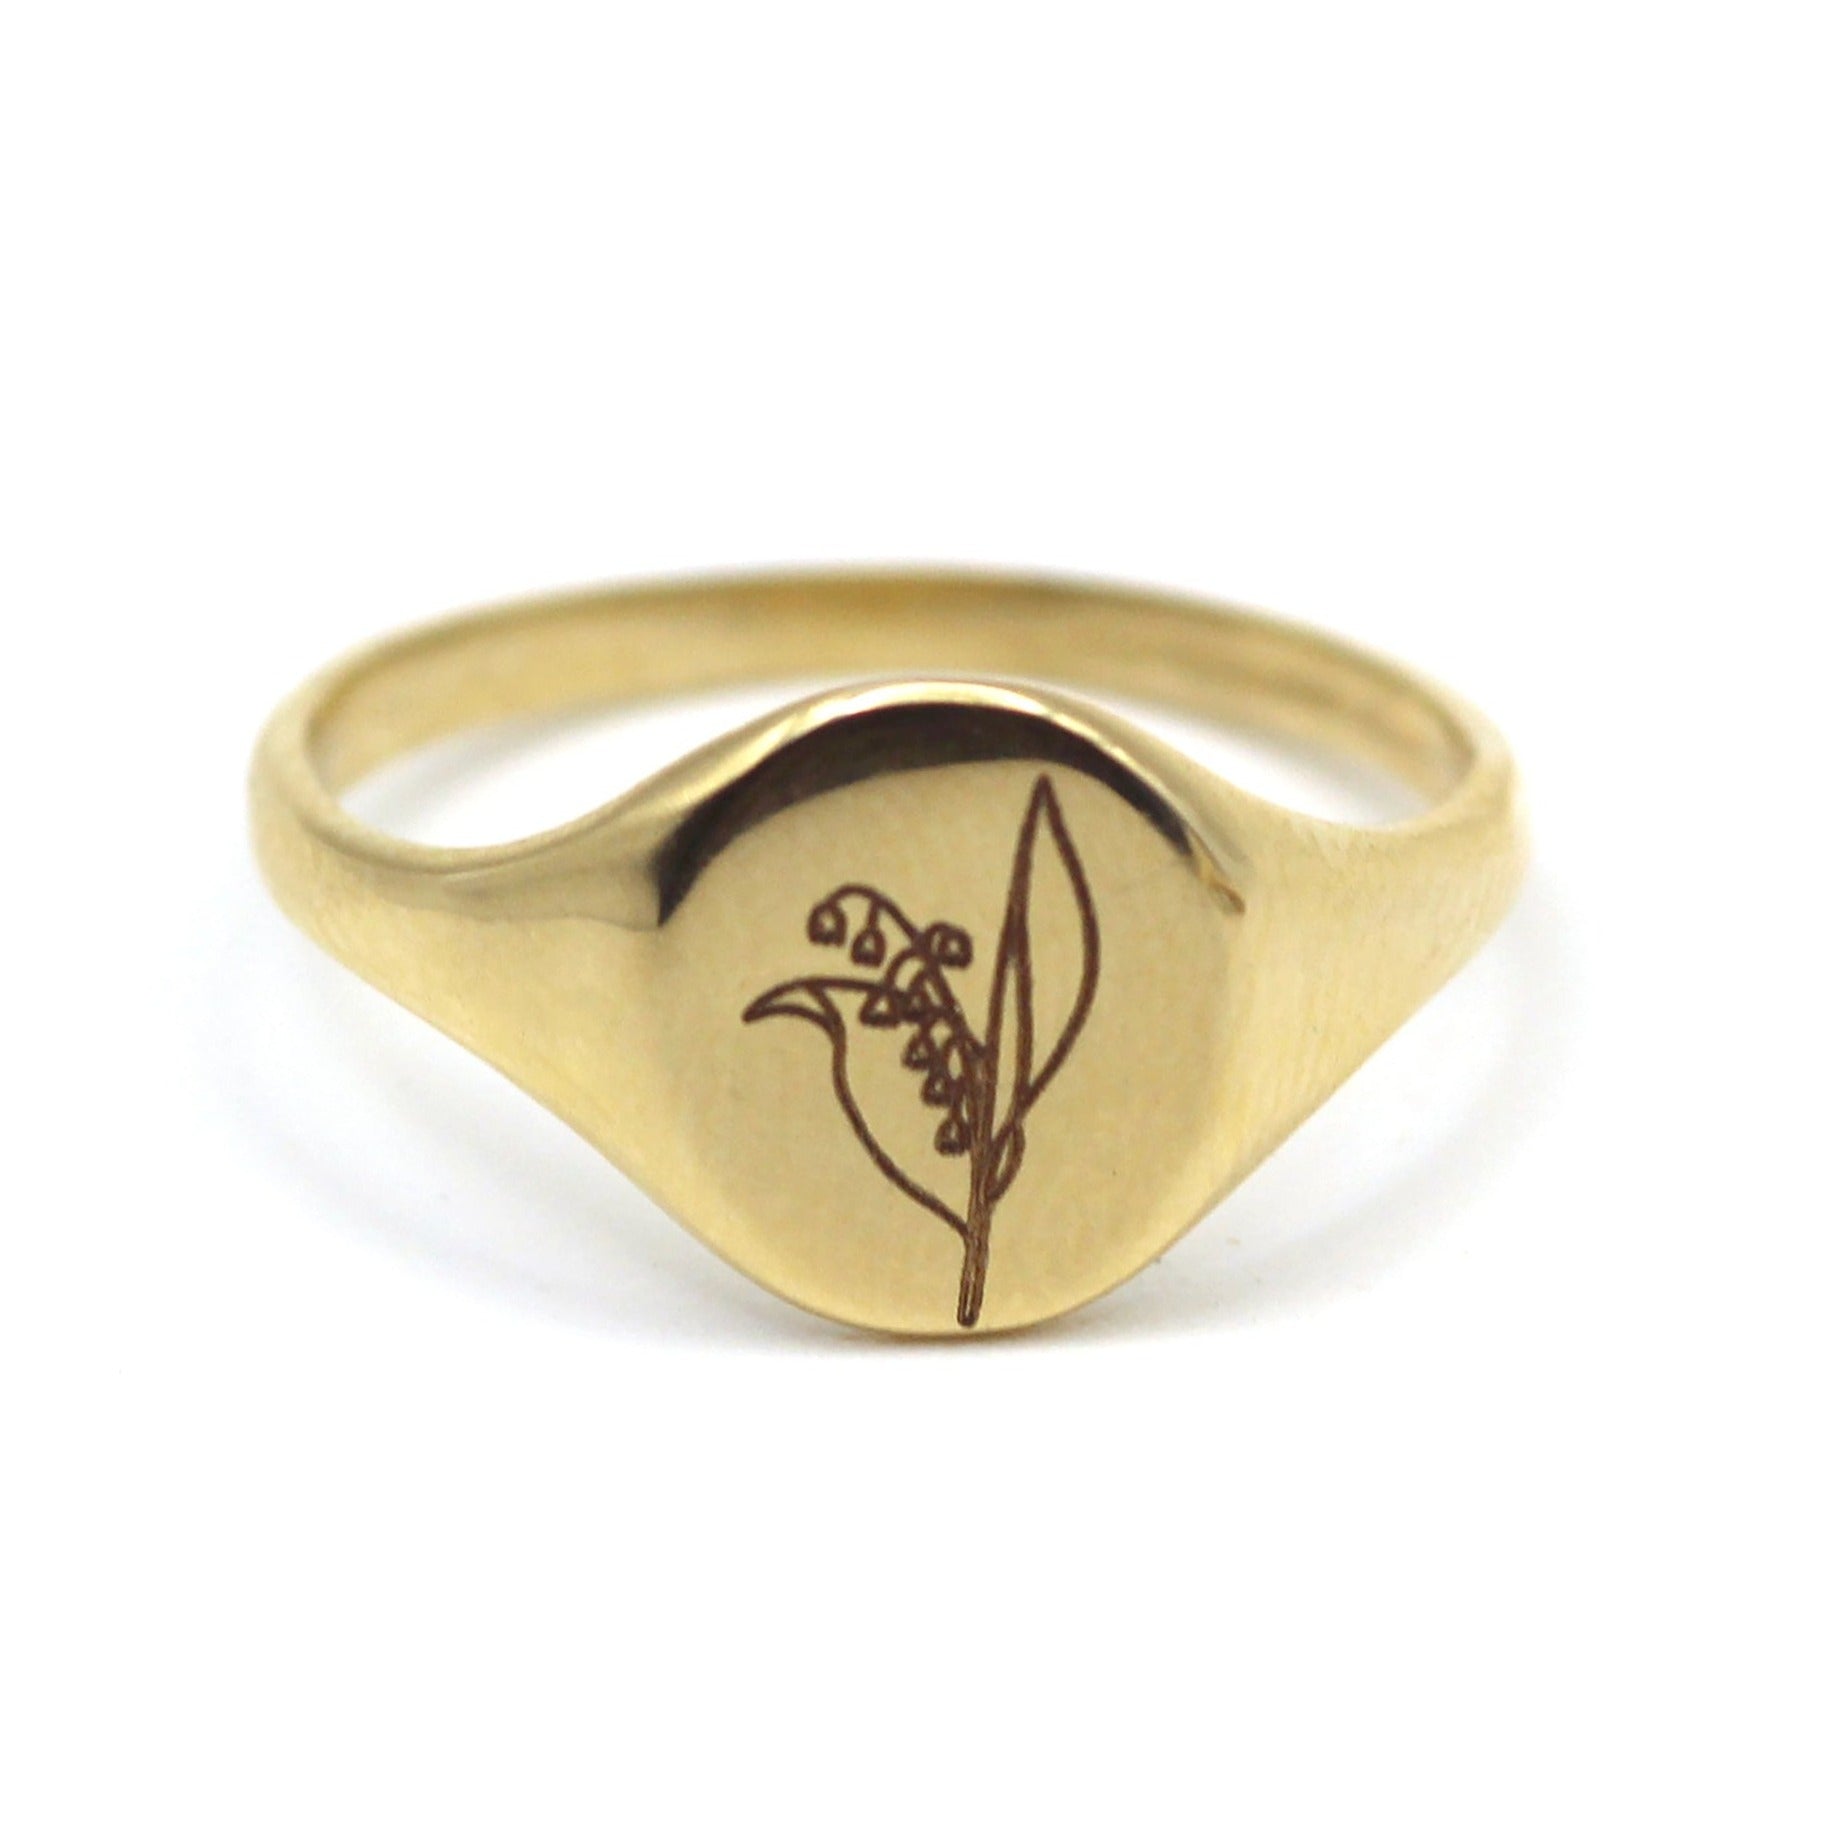 Engravable Gold Signet Ring 14K White Gold / 4.5